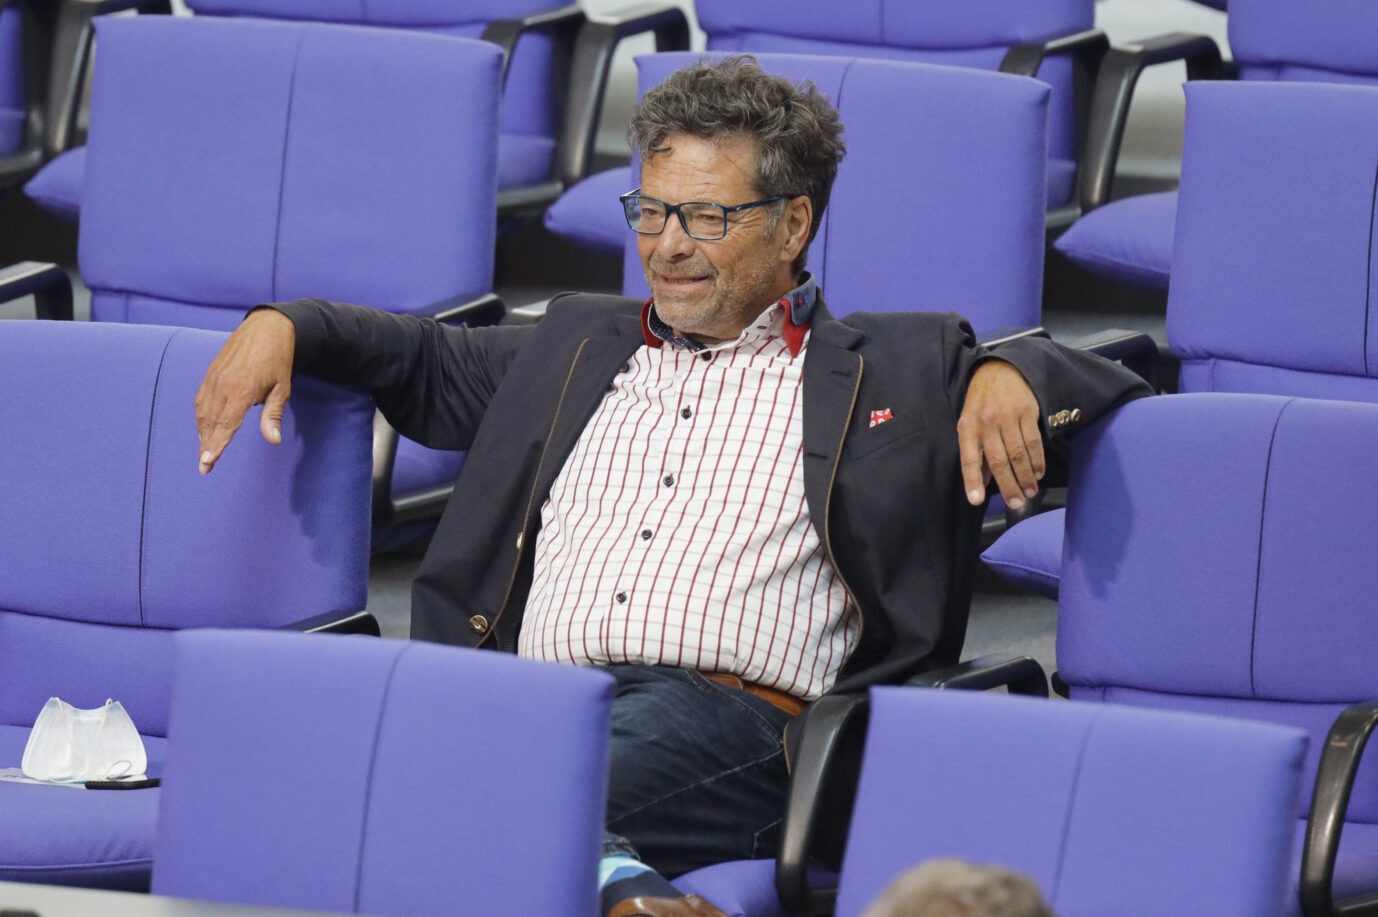 Der ehemalige Linkspartei-Bundestagsabgeordnete Diether Dehm: Seine Partei will ihn loswerden